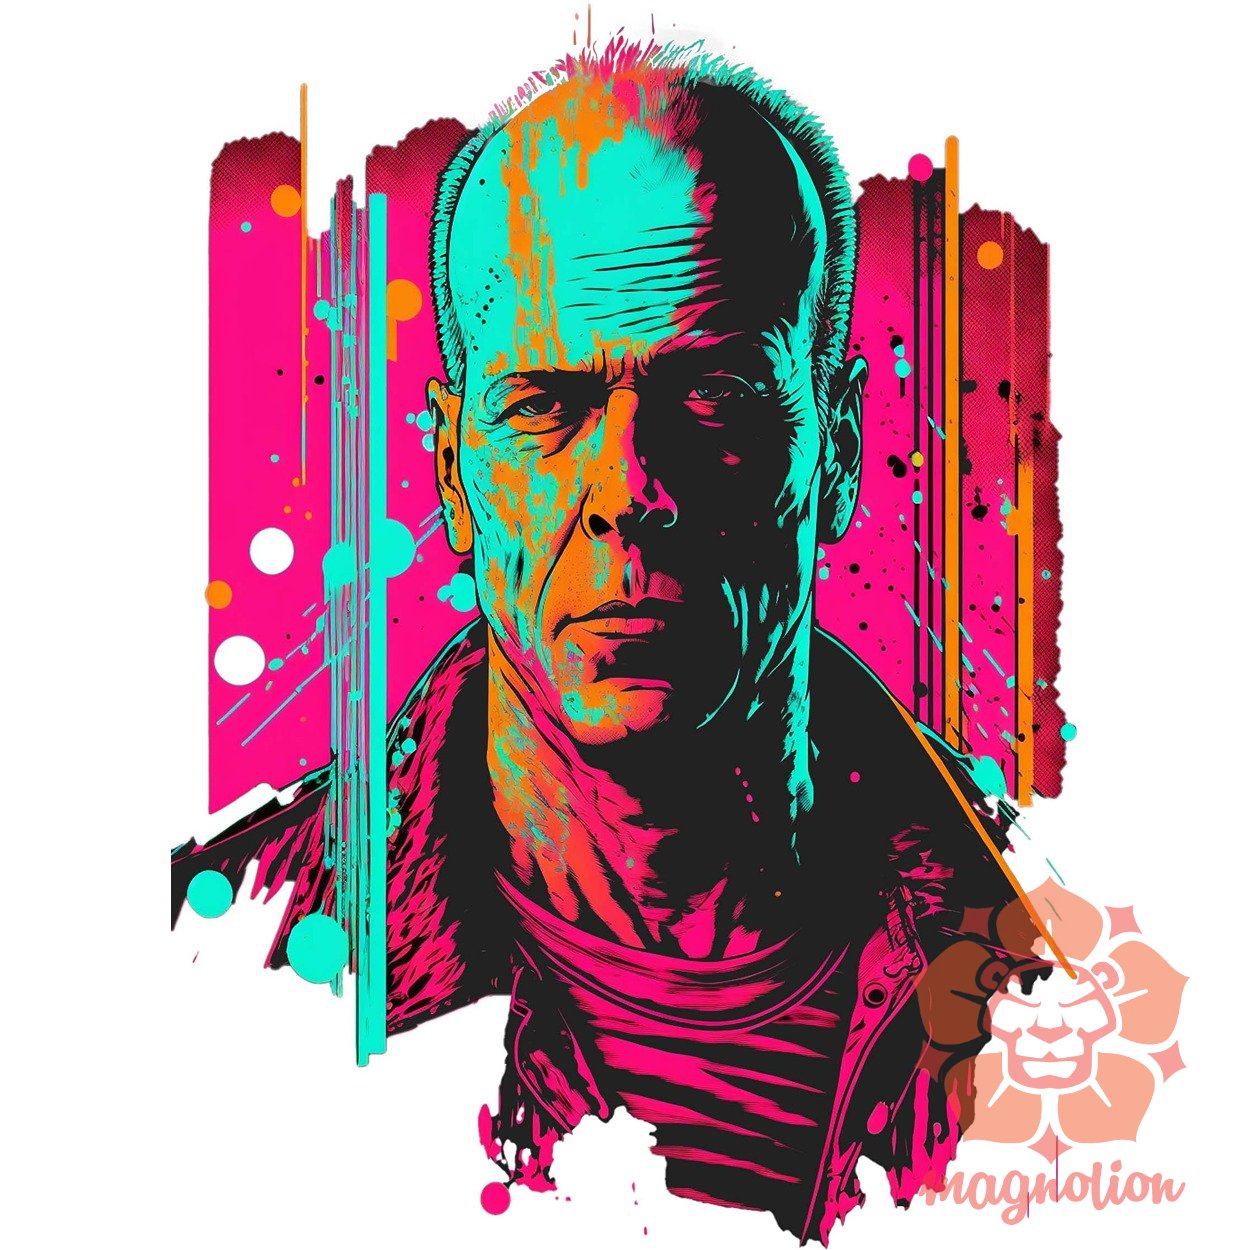 John McClane portré fanart v1